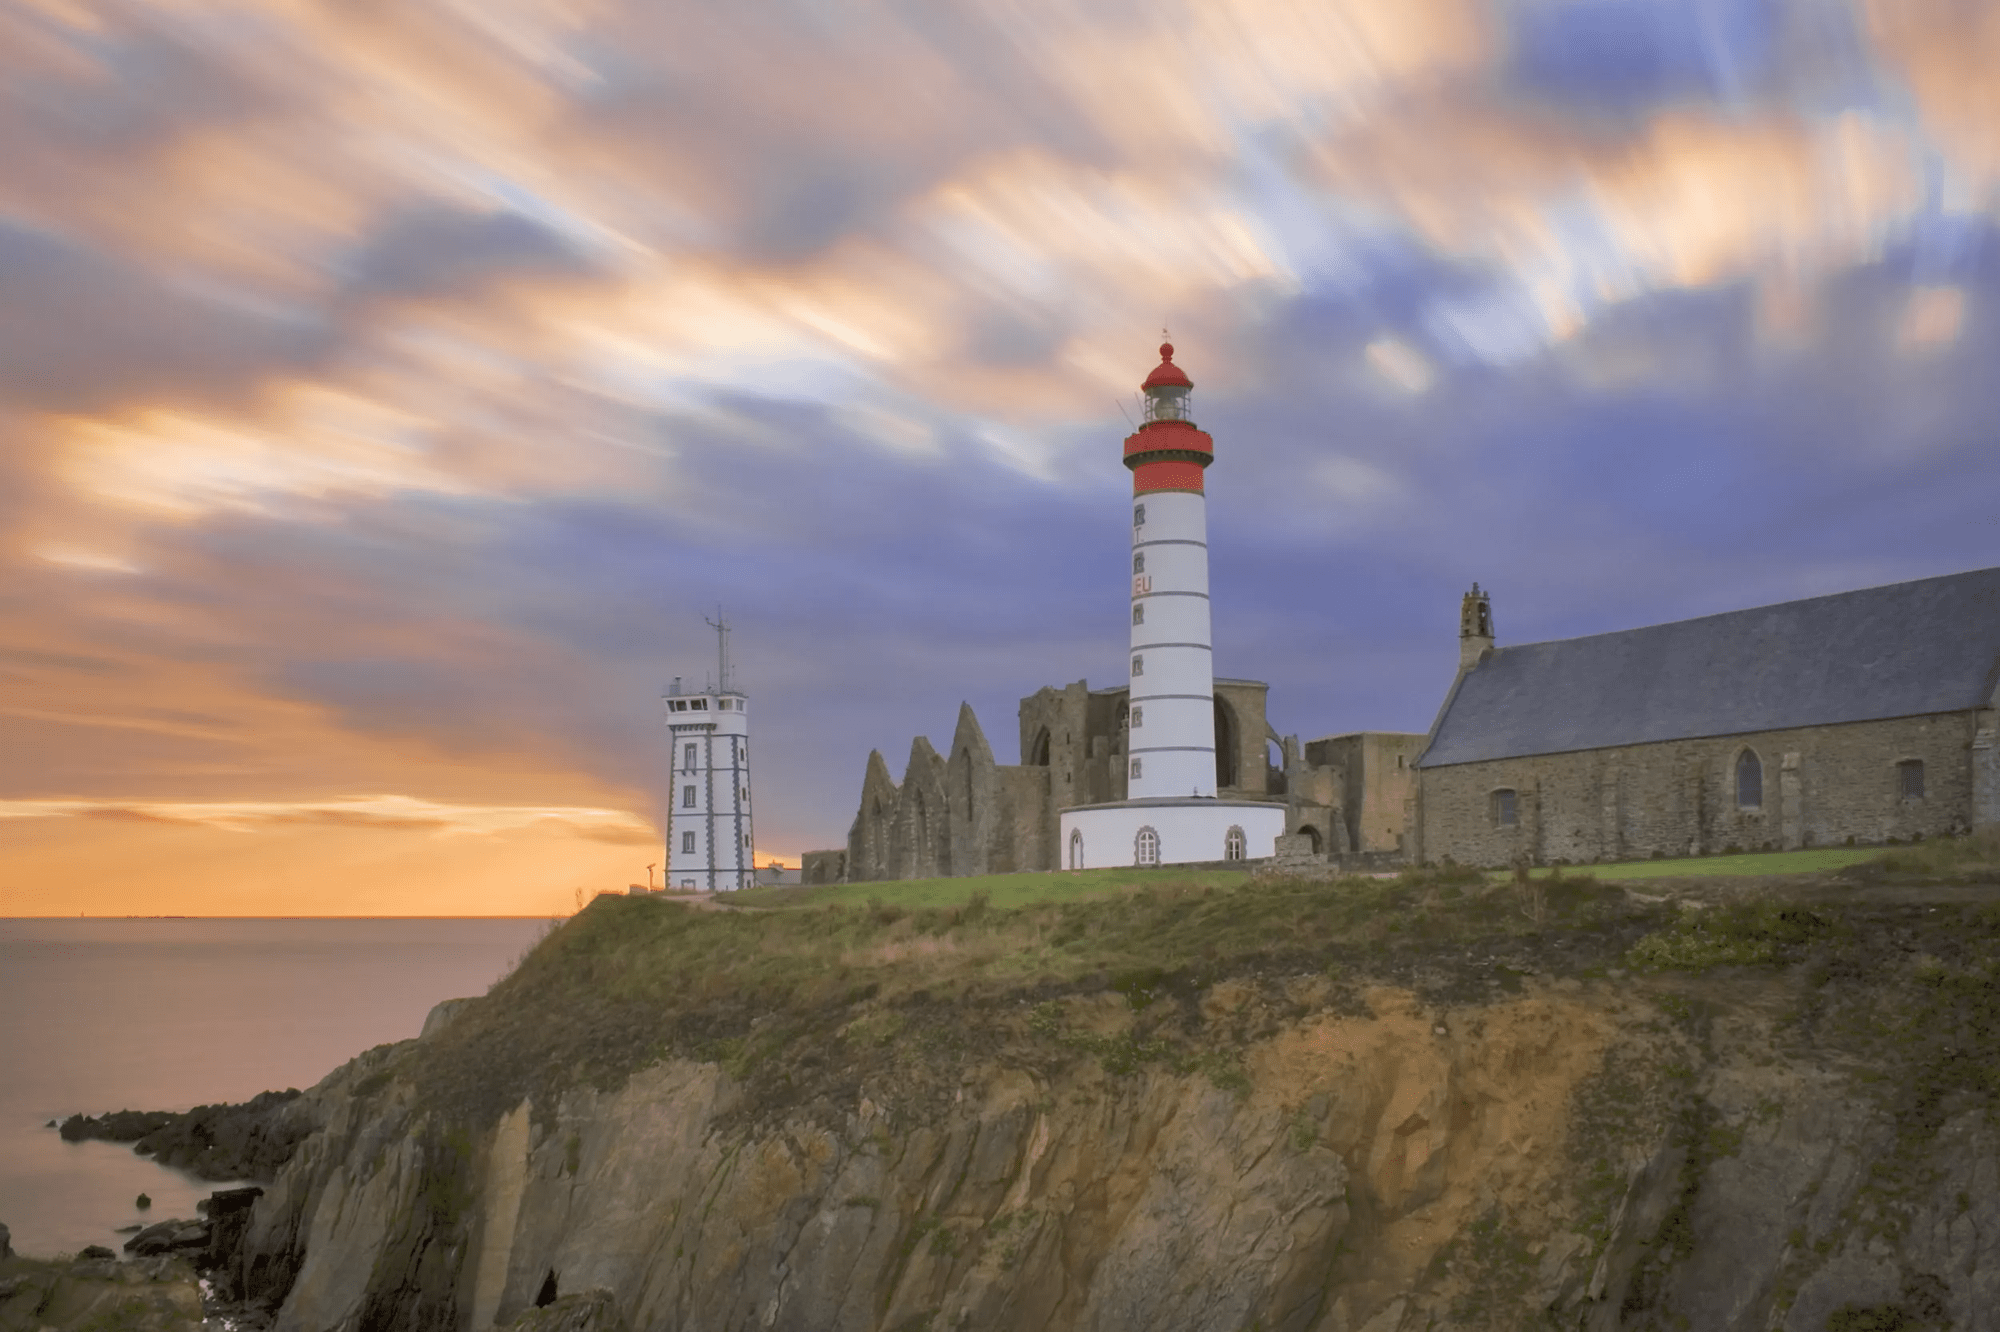 Rondreis 7-daagse rondreis Noord- en Zuid-Bretagne - Het ritme van de oceaan in Bénodet (Diversen, Frankrijk)